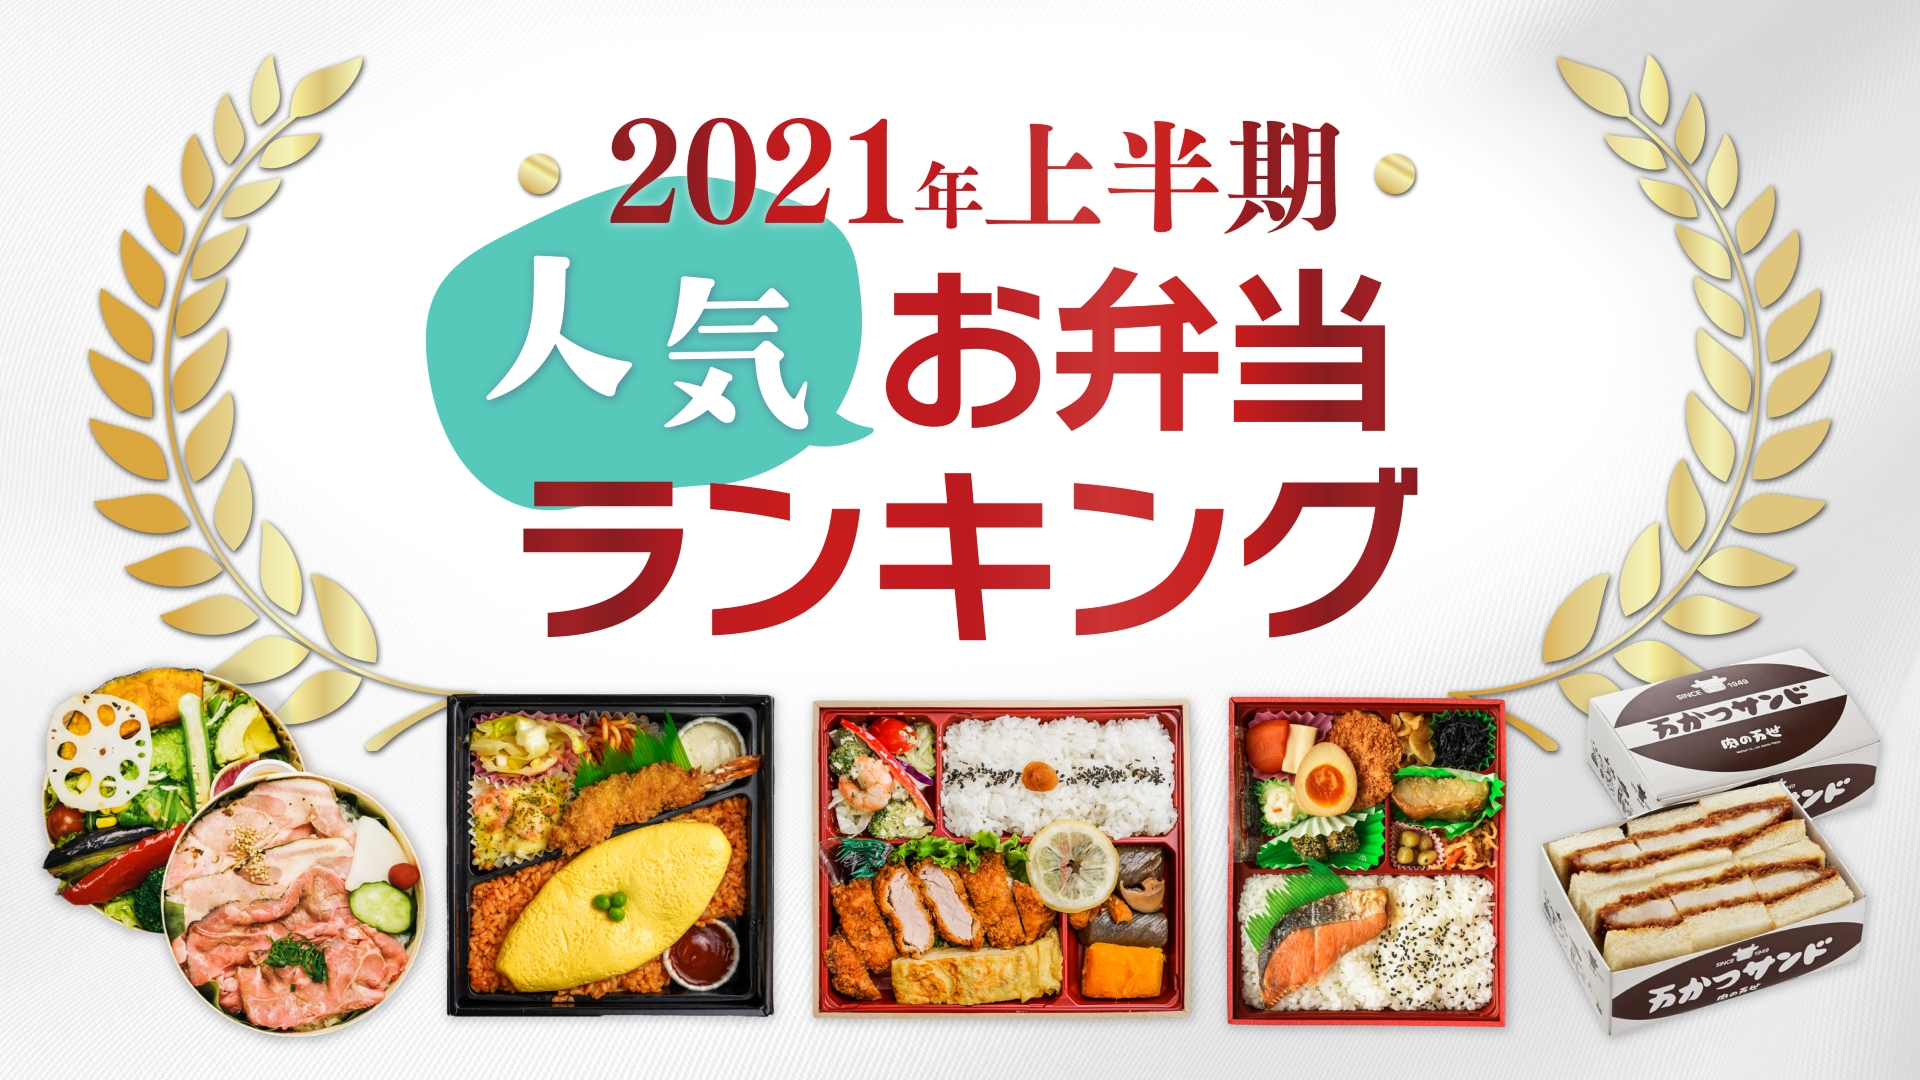 日本最大級の法人 団体向けの宅配弁当のデリバリーサイト お弁当デリ ２０２１年上半期売上ランキングを発表 ワオ株式会社のプレスリリース